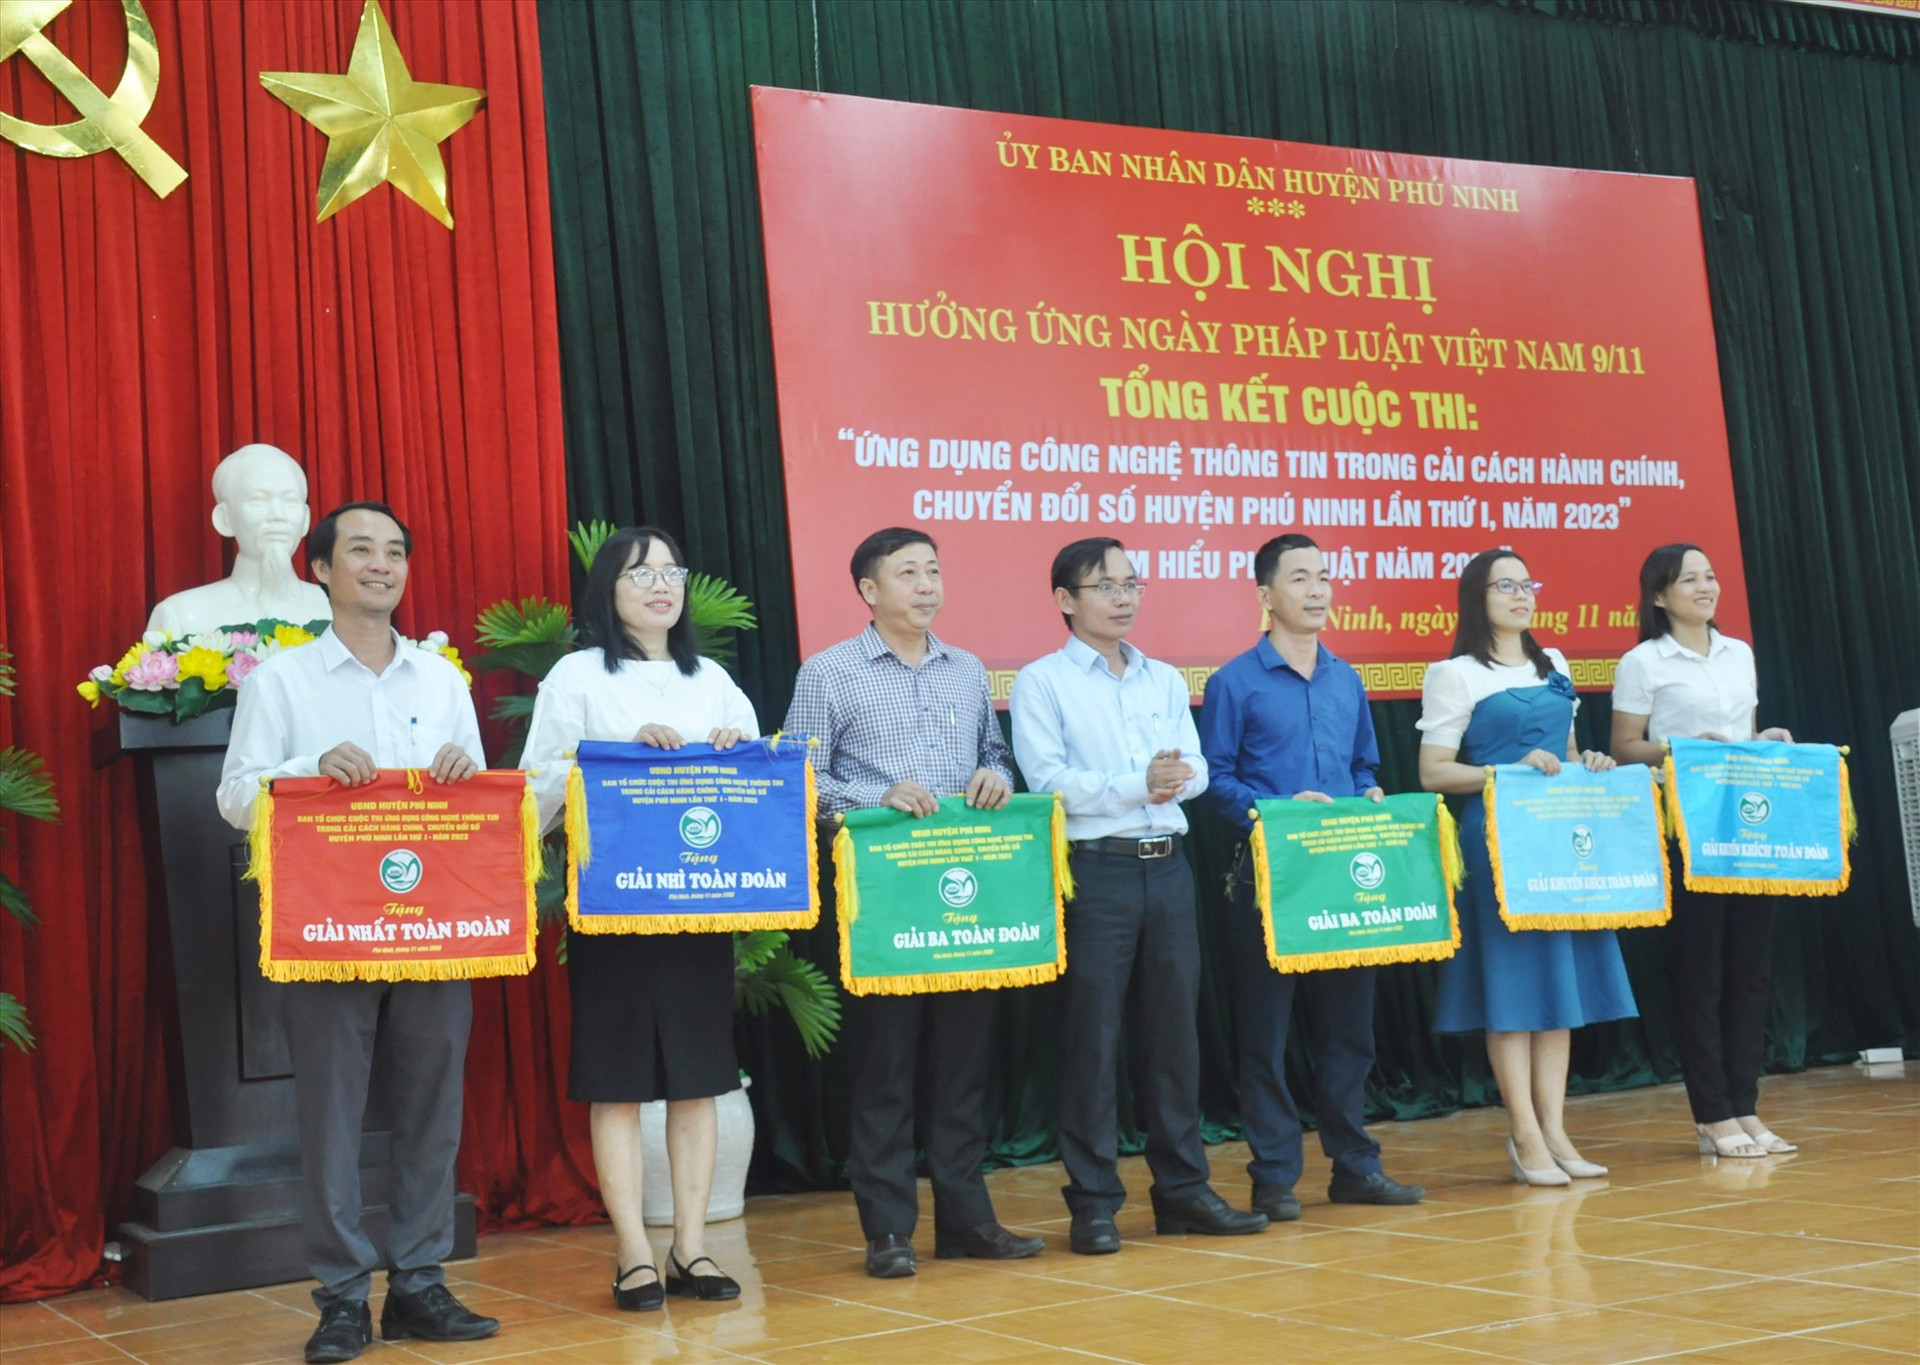 Lãnh đạo UBND huyện Phú Ninh trao giải toàn đoàn cho các đơn vị. Ảnh: N.Đ